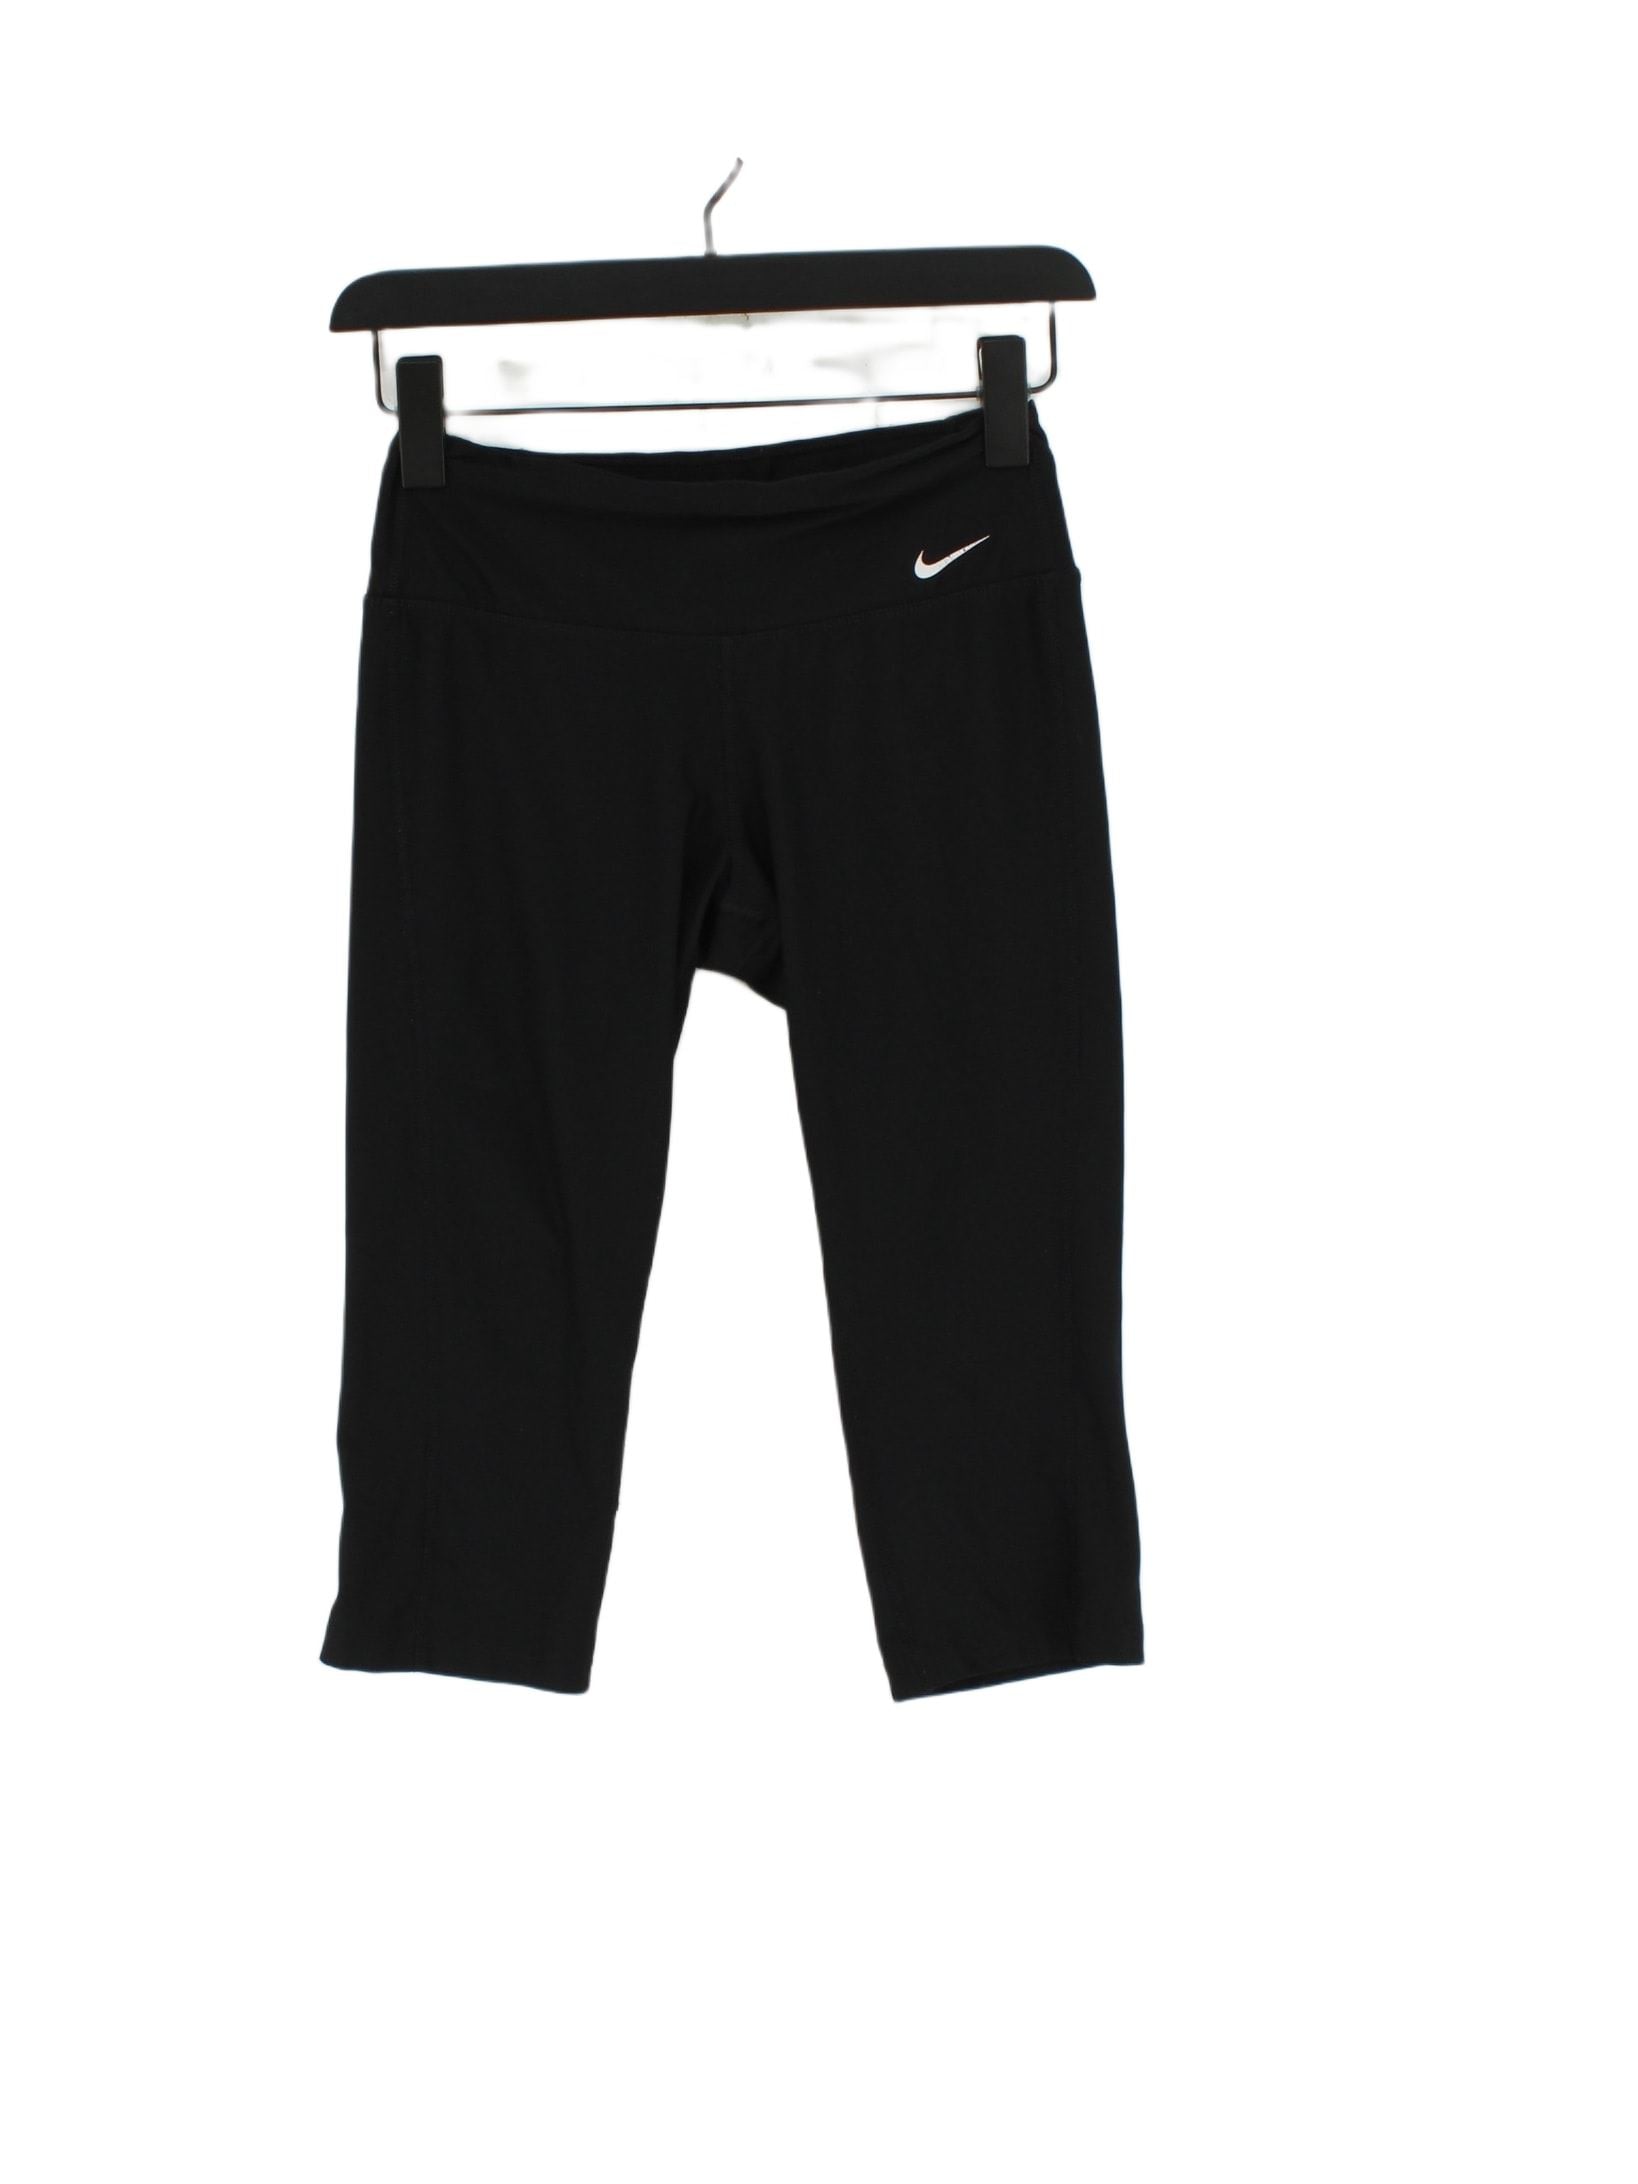 Nike Women's Leggings Xs Black Polyester with Elastane